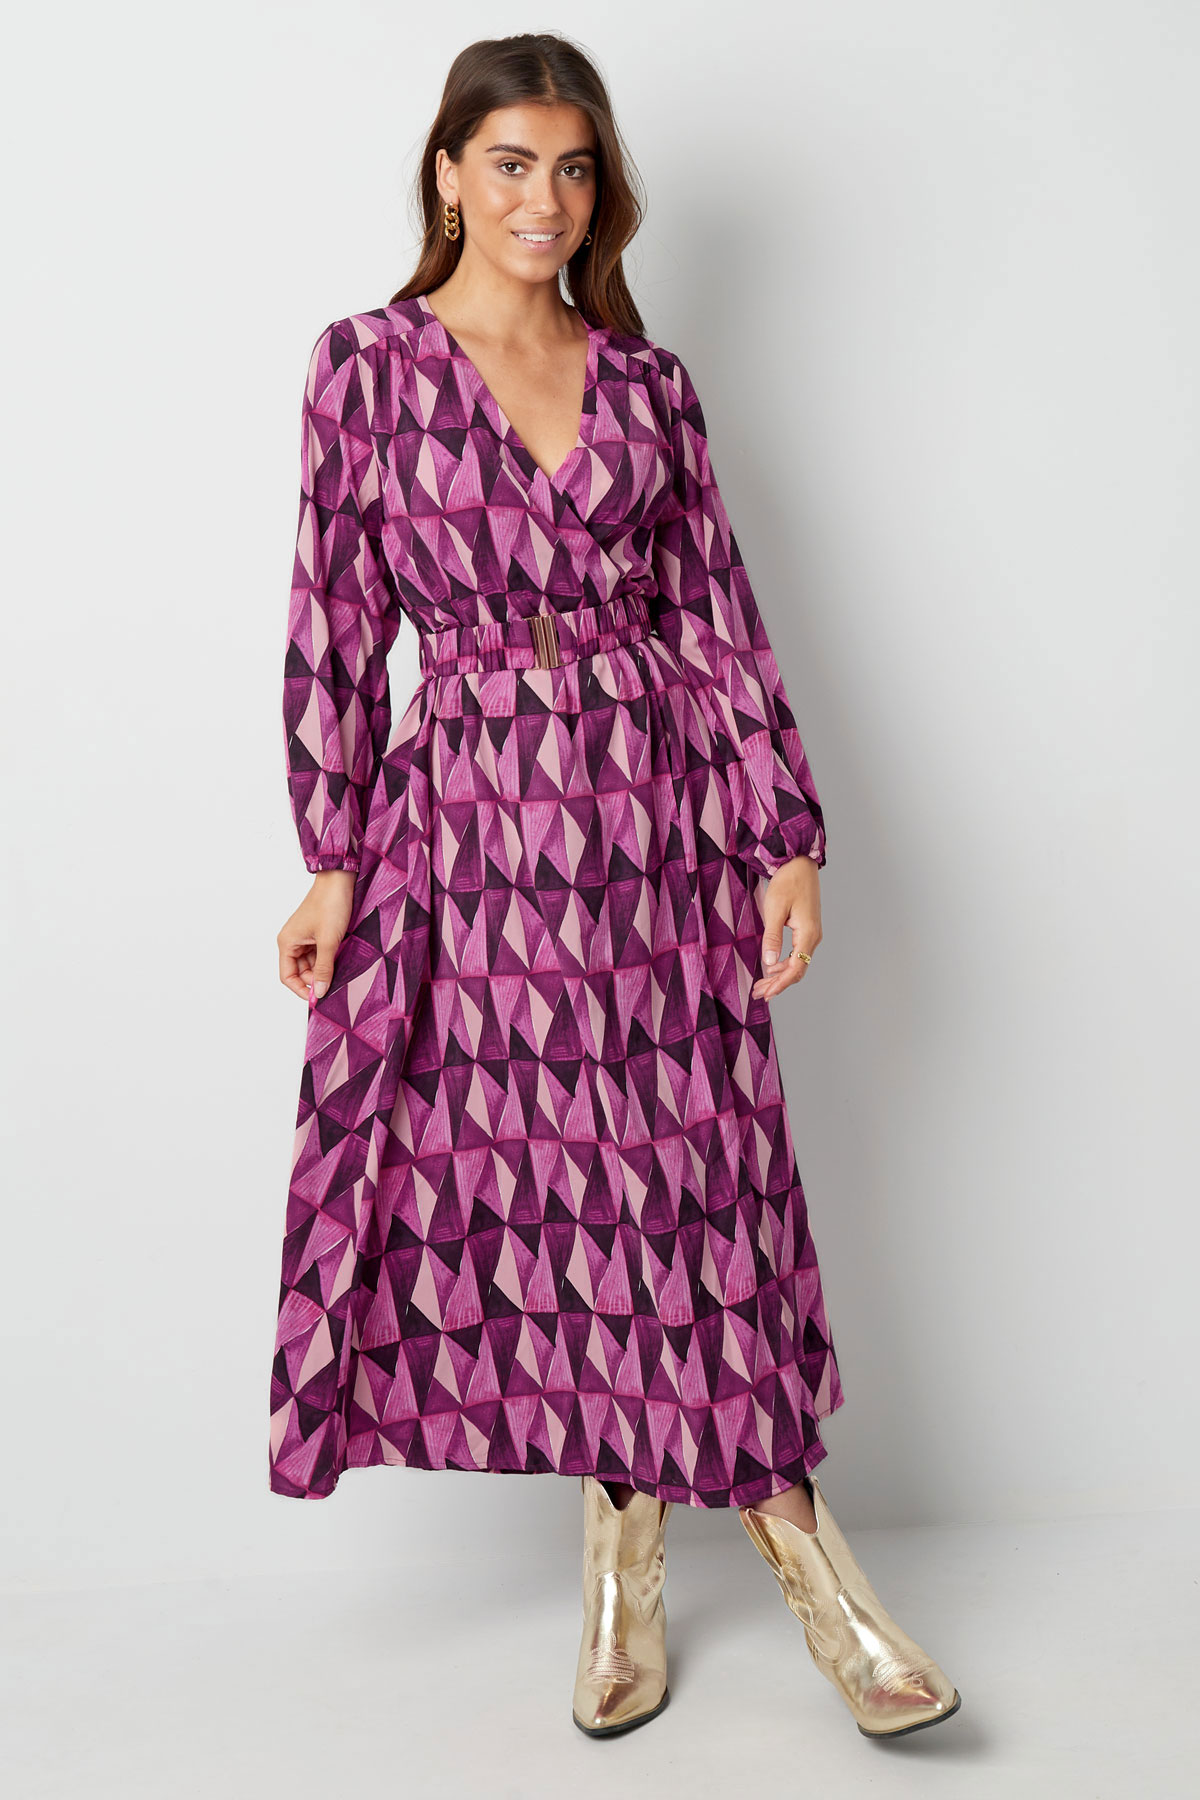 Robe longue imprimé rétro violet rose h5 Image3